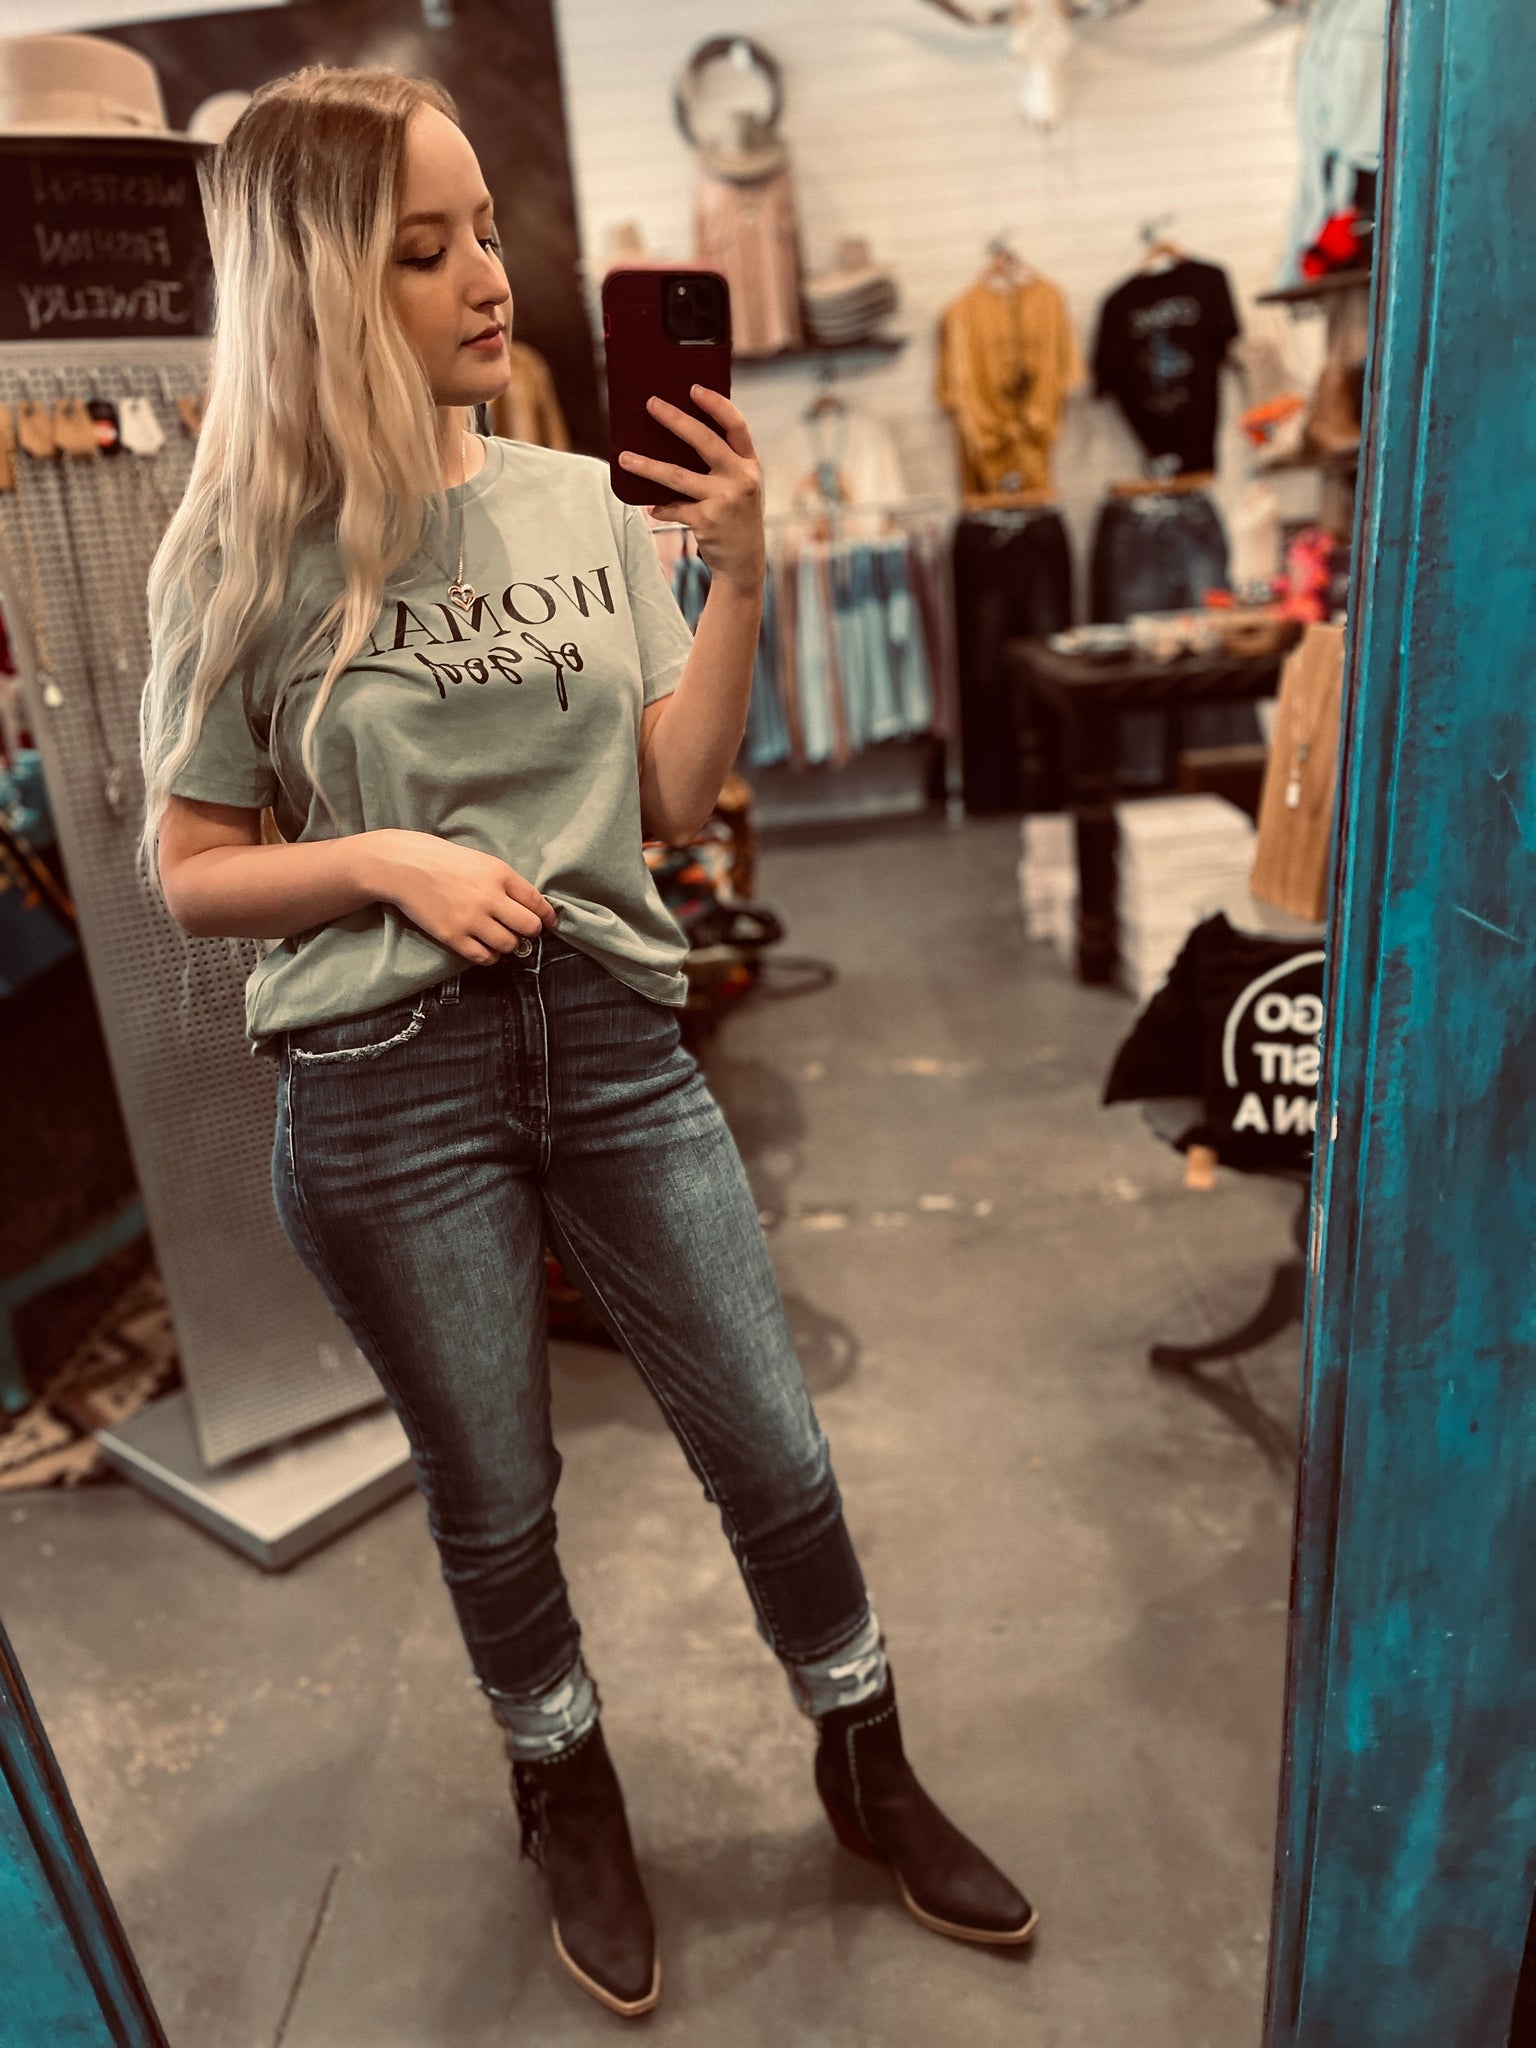 Zoe Skinny Jeans